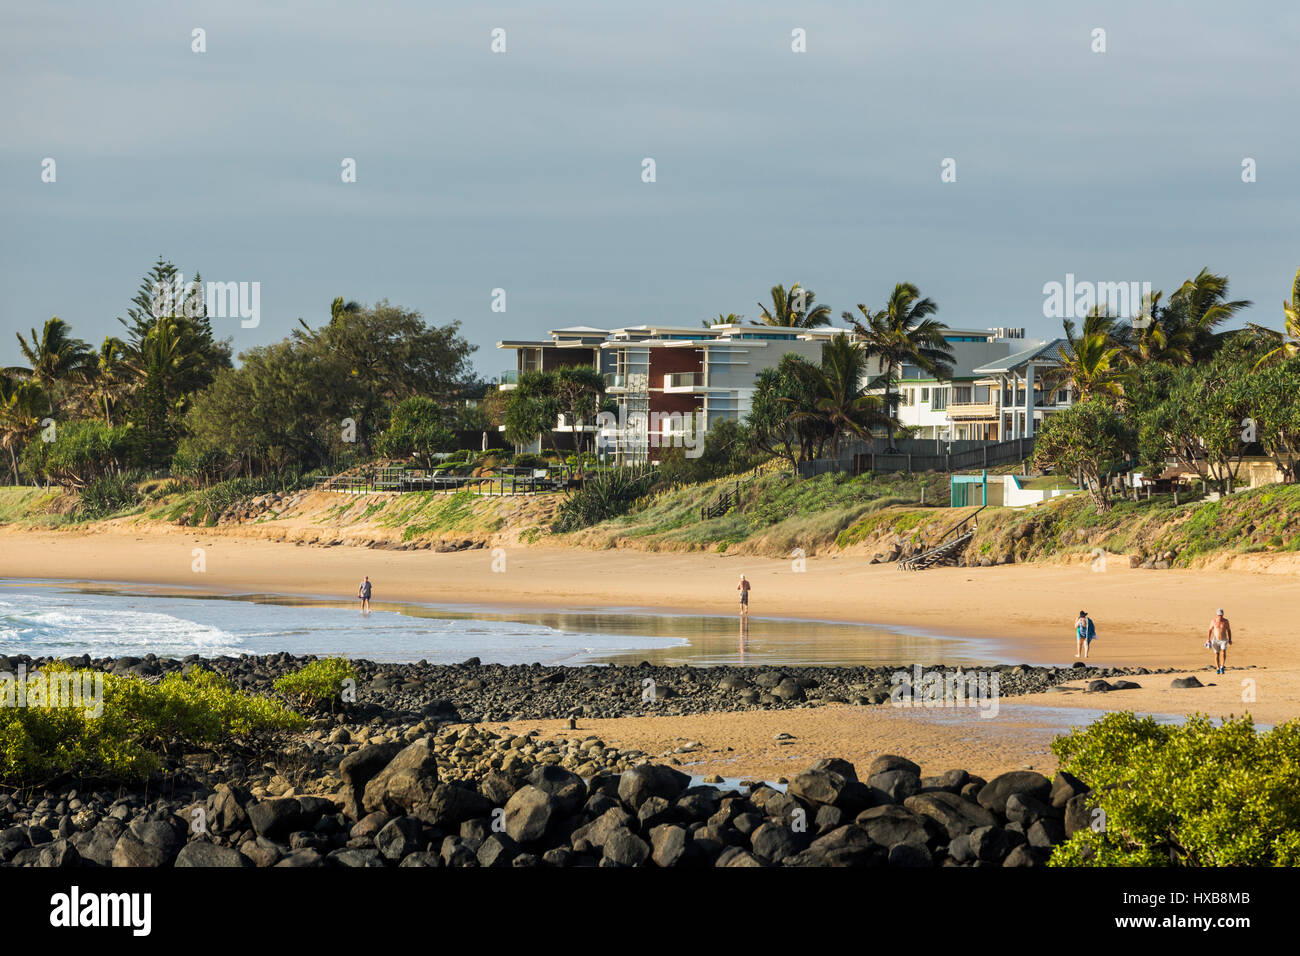 Afficher le long de la côte de propriétés en bord de plage de Bargara, Bundaberg, Queensland, Australie Banque D'Images